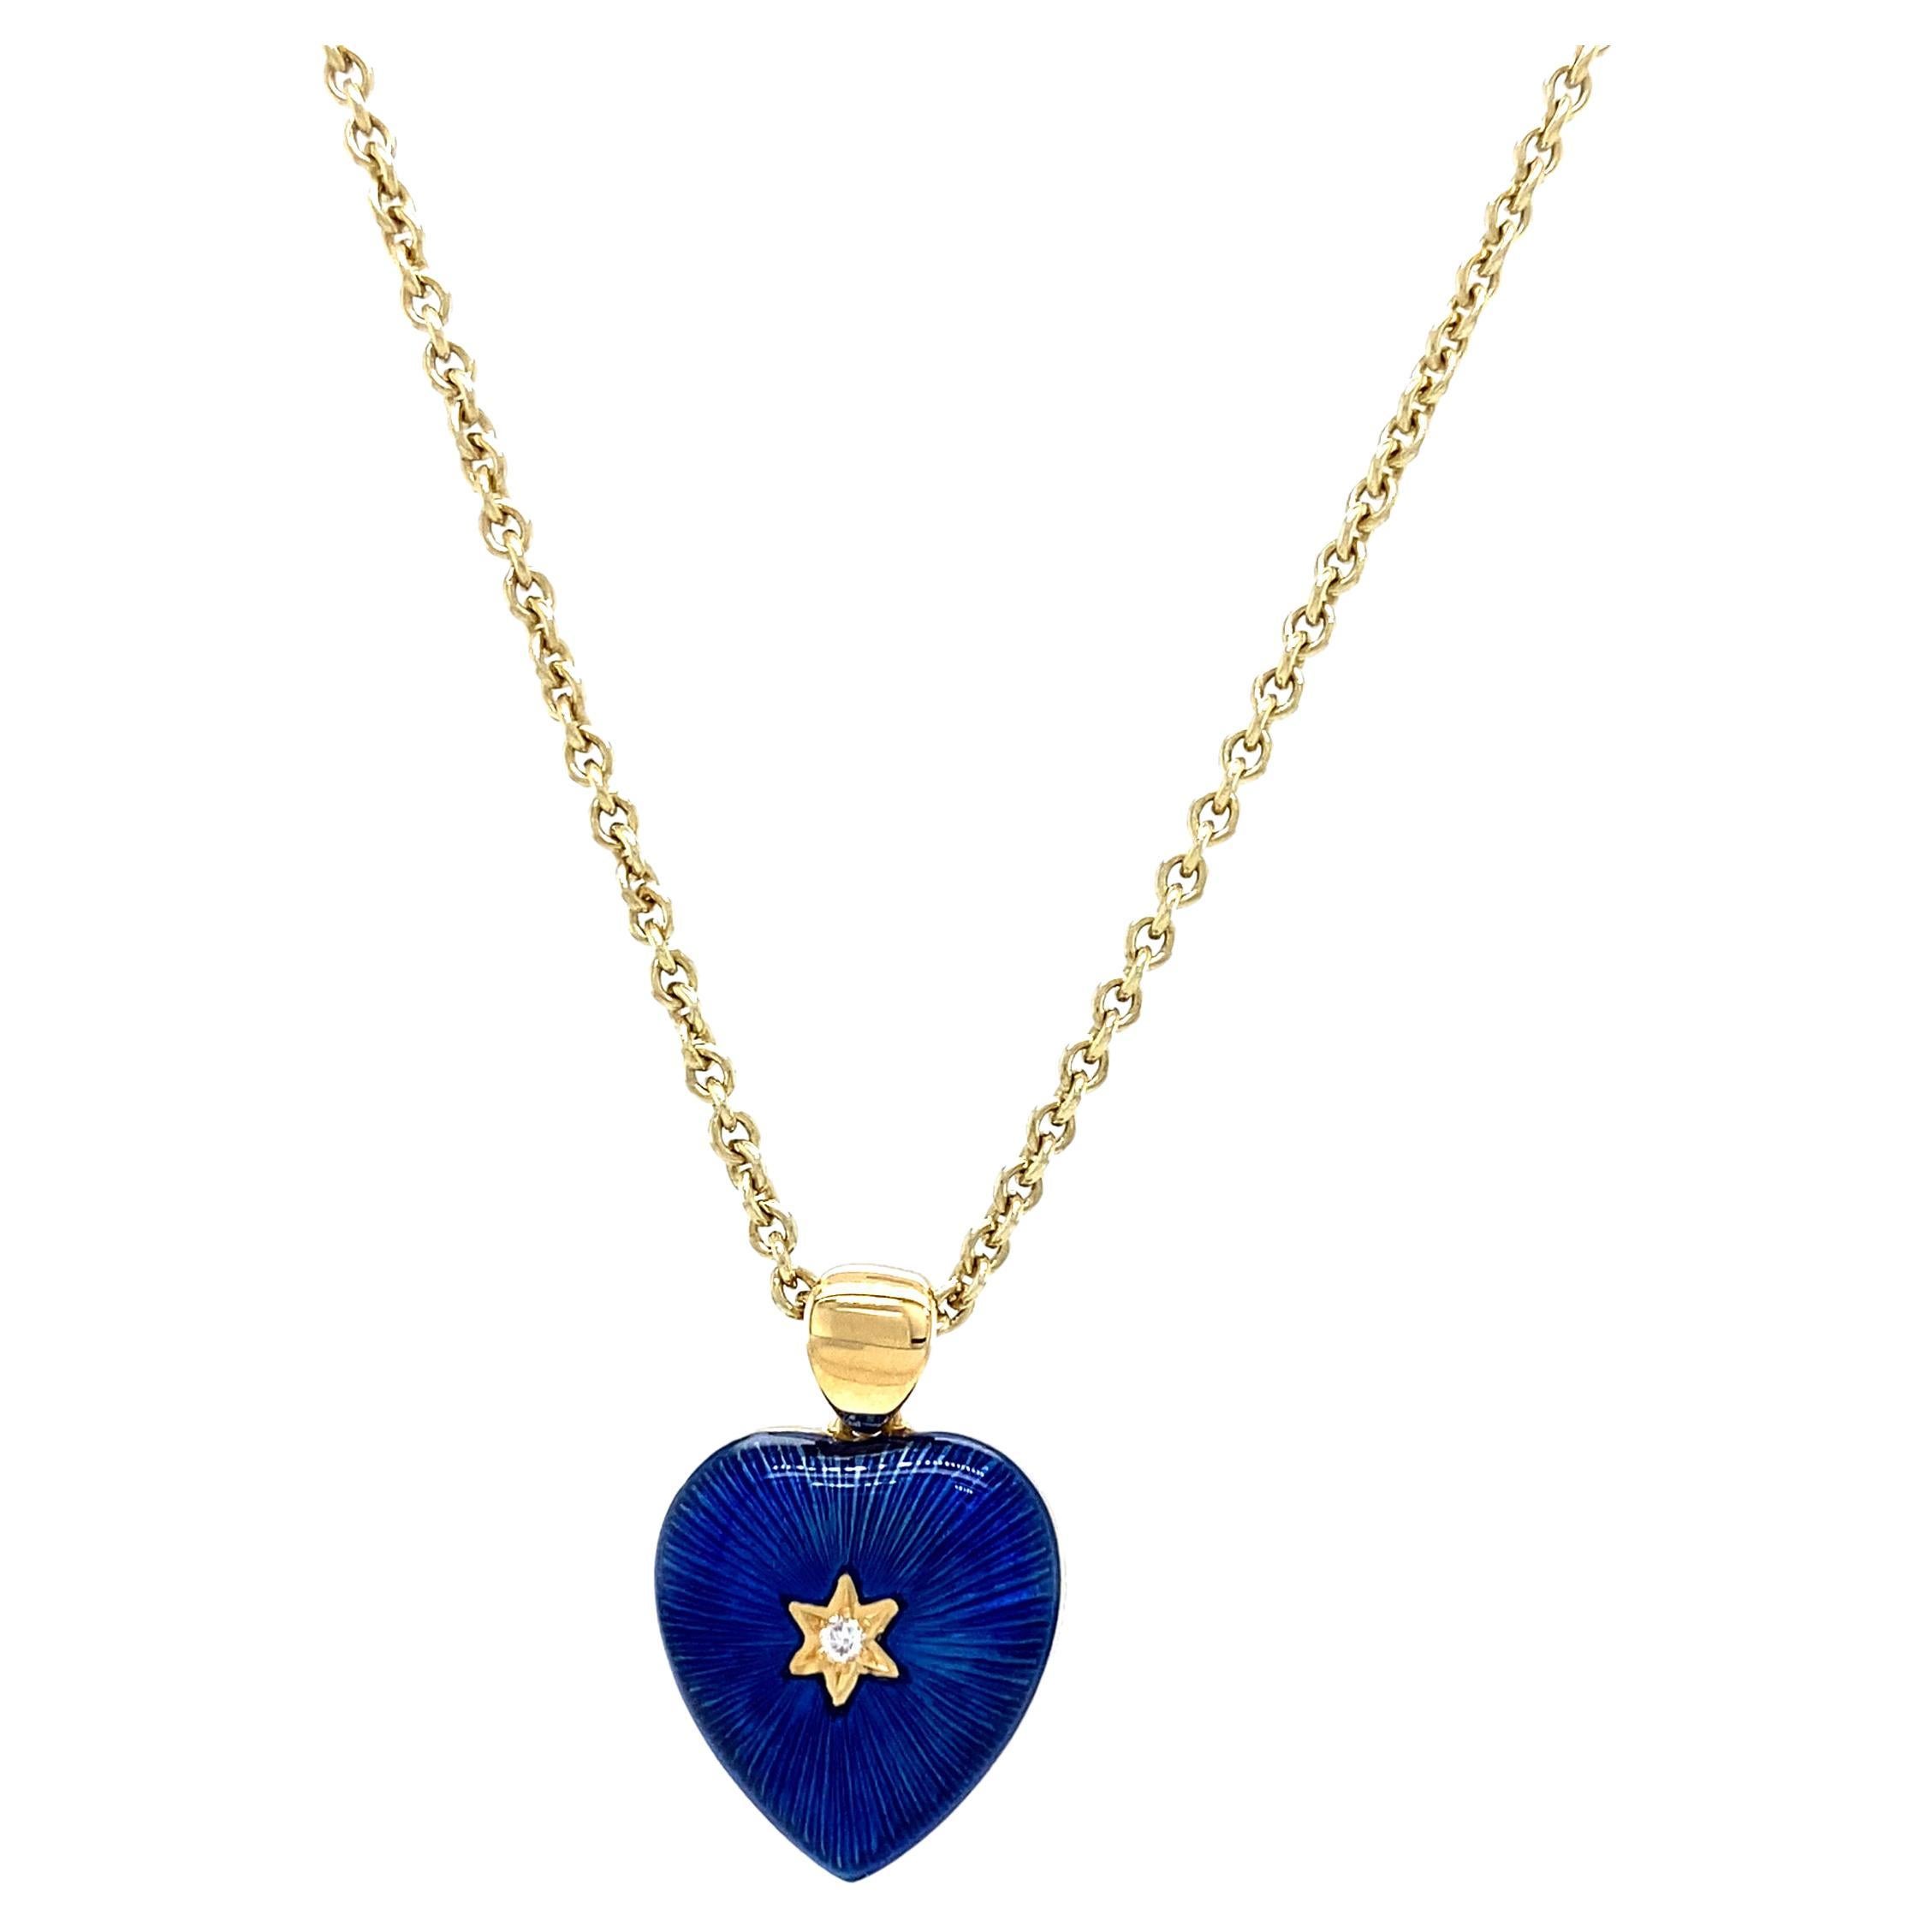 Pendentif cœur bicolore en or jaune 18 carats et émail bleu foncé/bleu clair avec diamants 2,02 carats